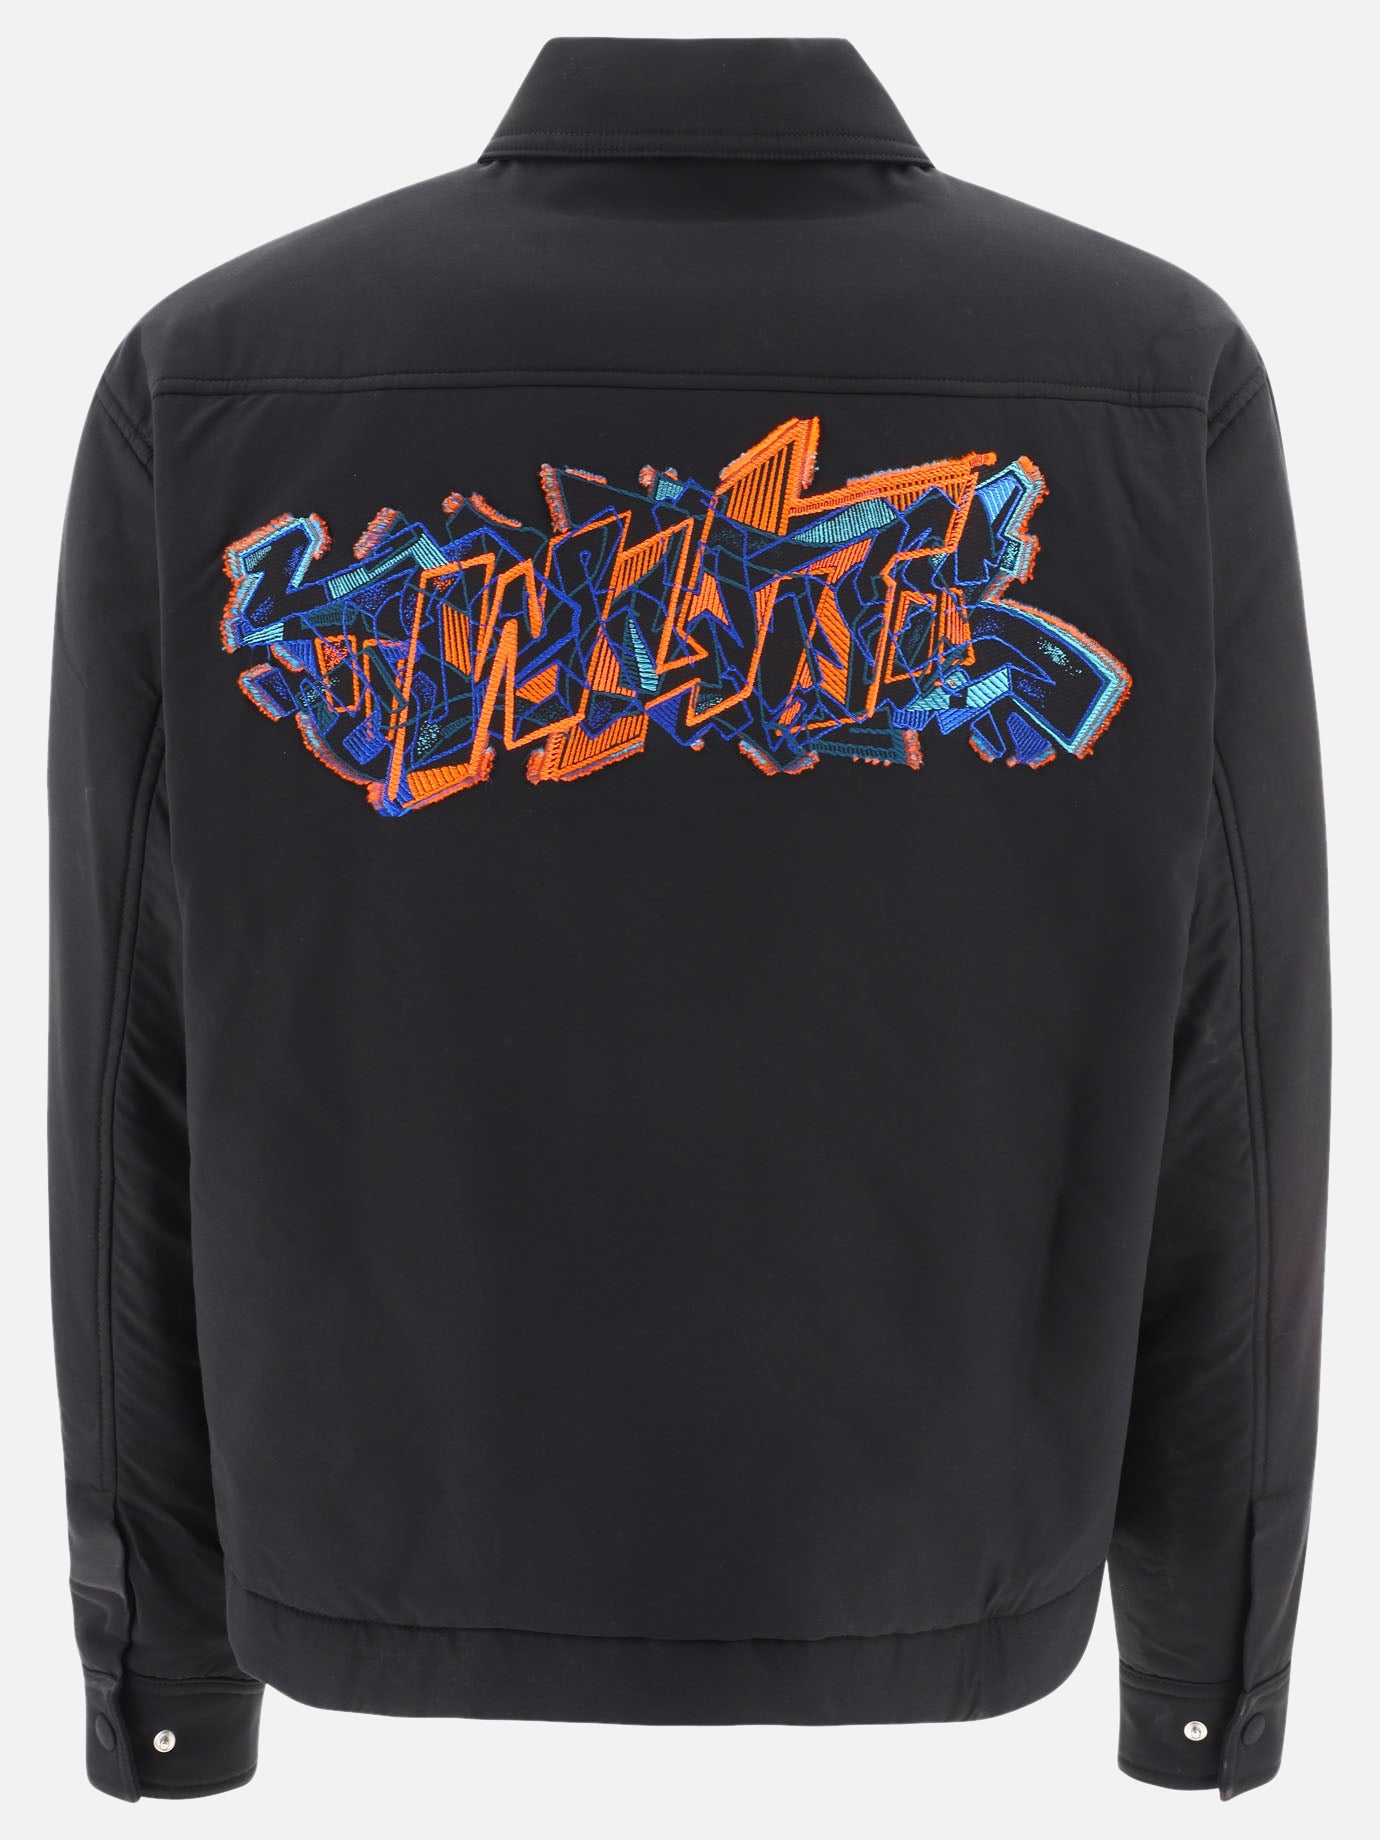 "Graffiti" overshirt jacket